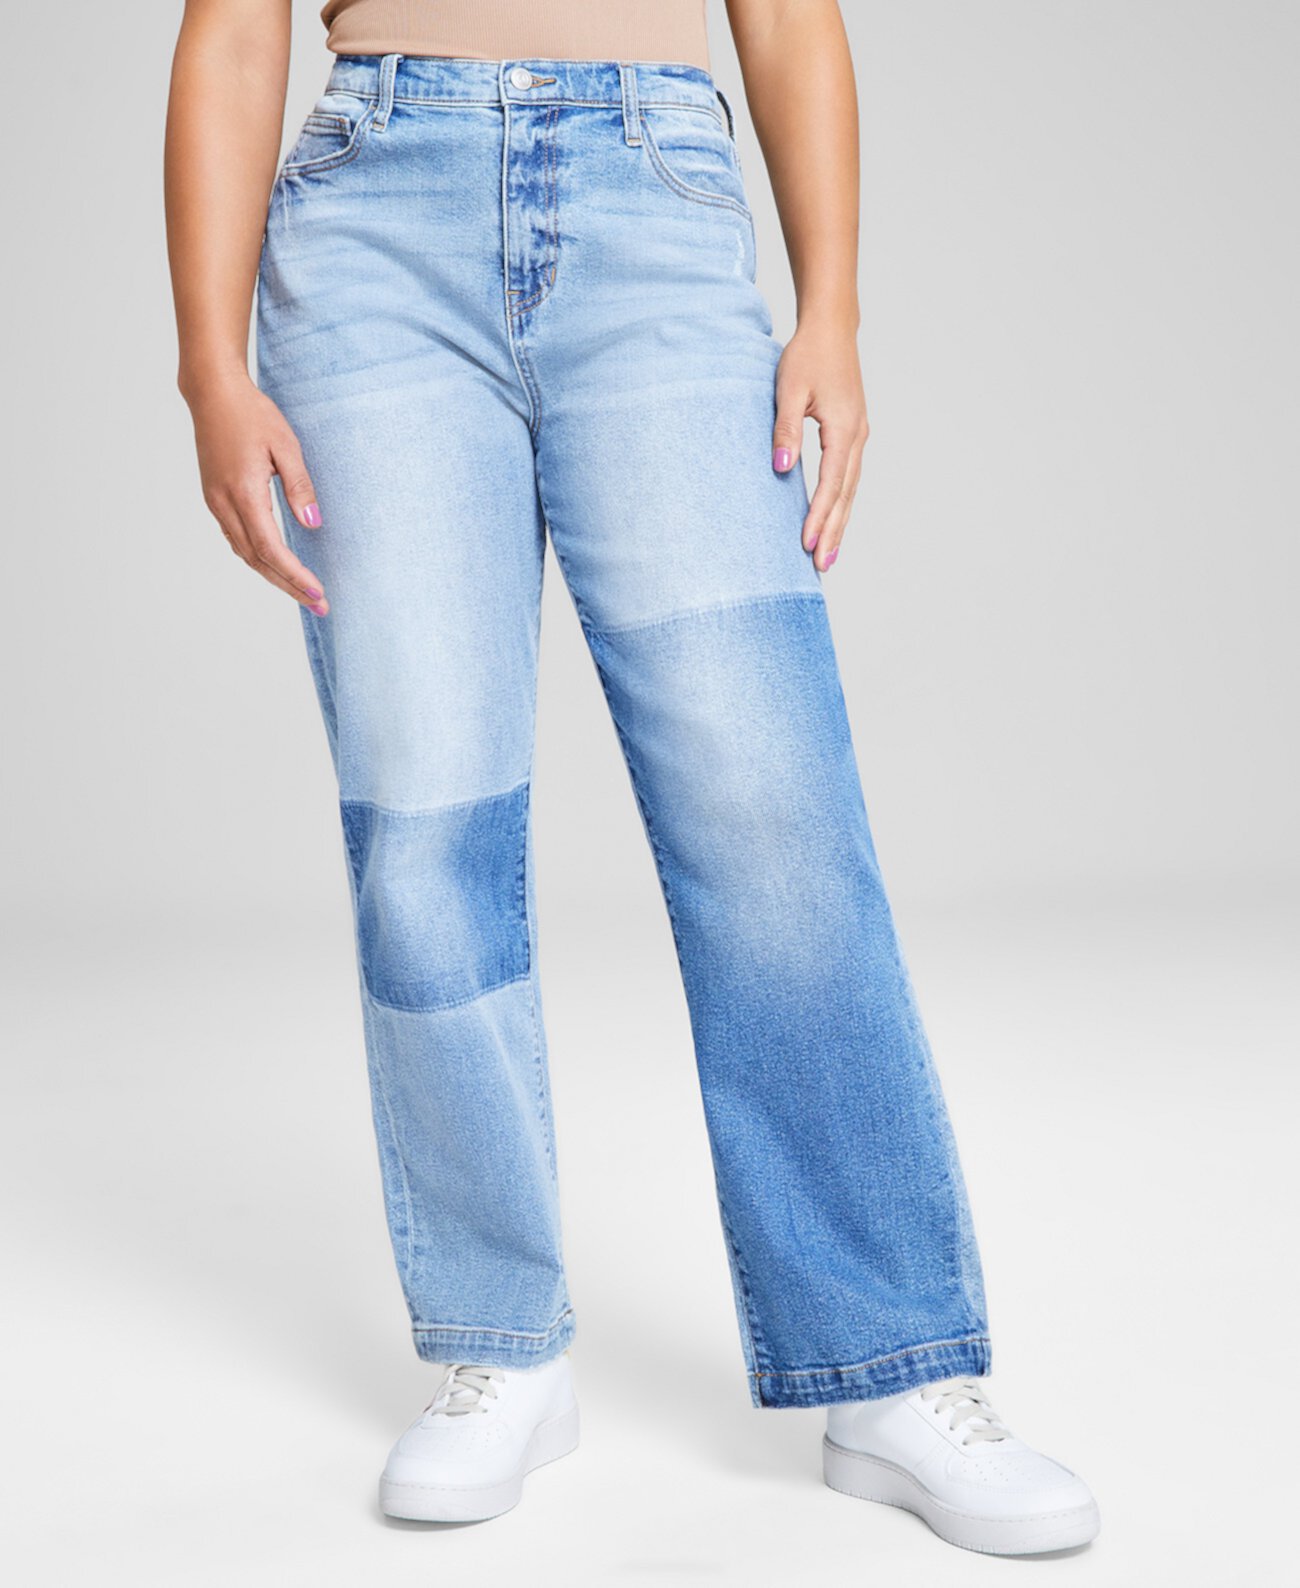 Женские джинсы прямого кроя со сверхвысокой посадкой, созданные для Macy's And Now This